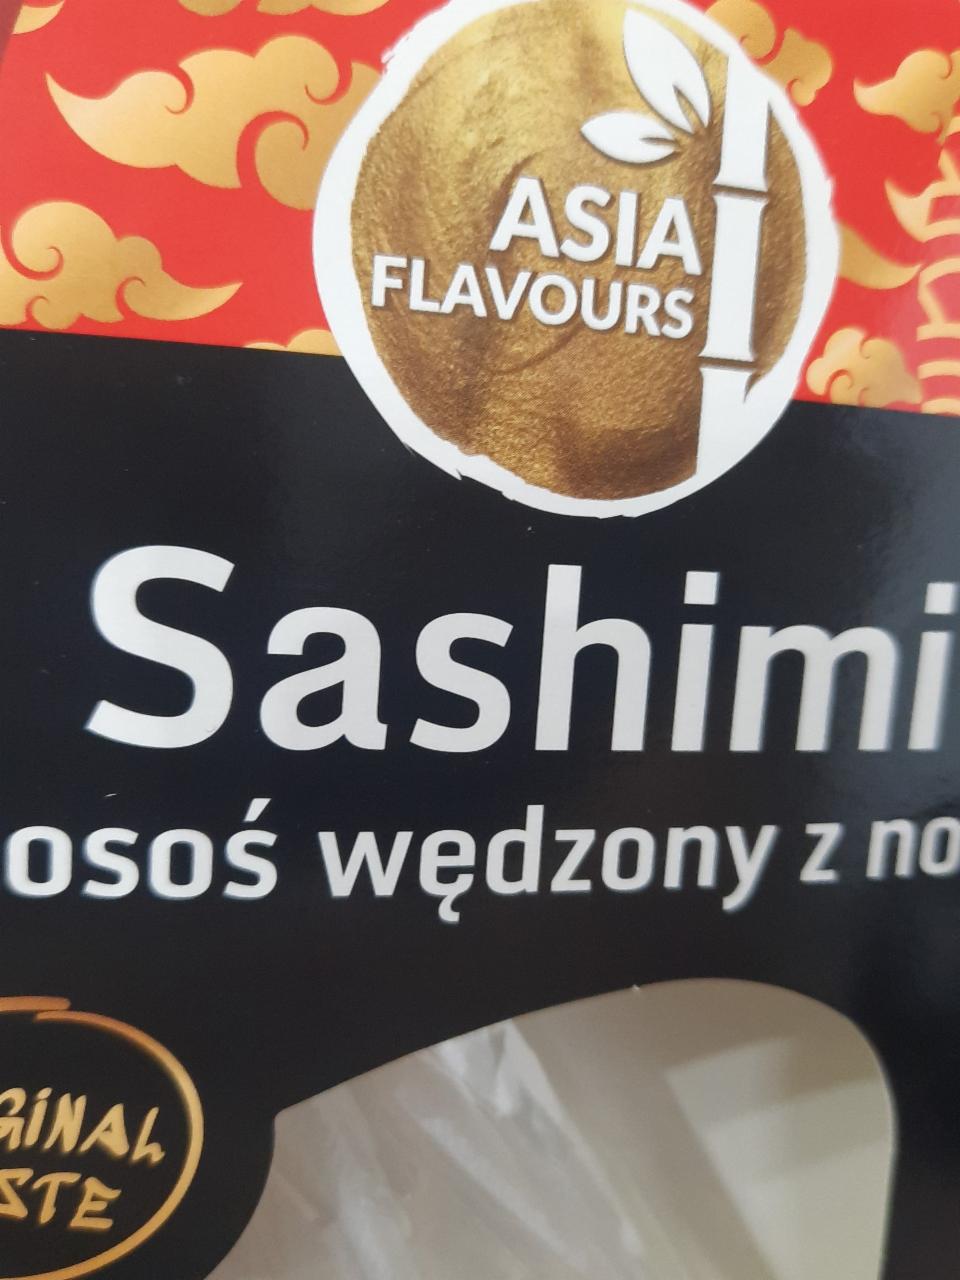 Zdjęcia - Sashimi Łosoś wędzony z nori Asia Flavours